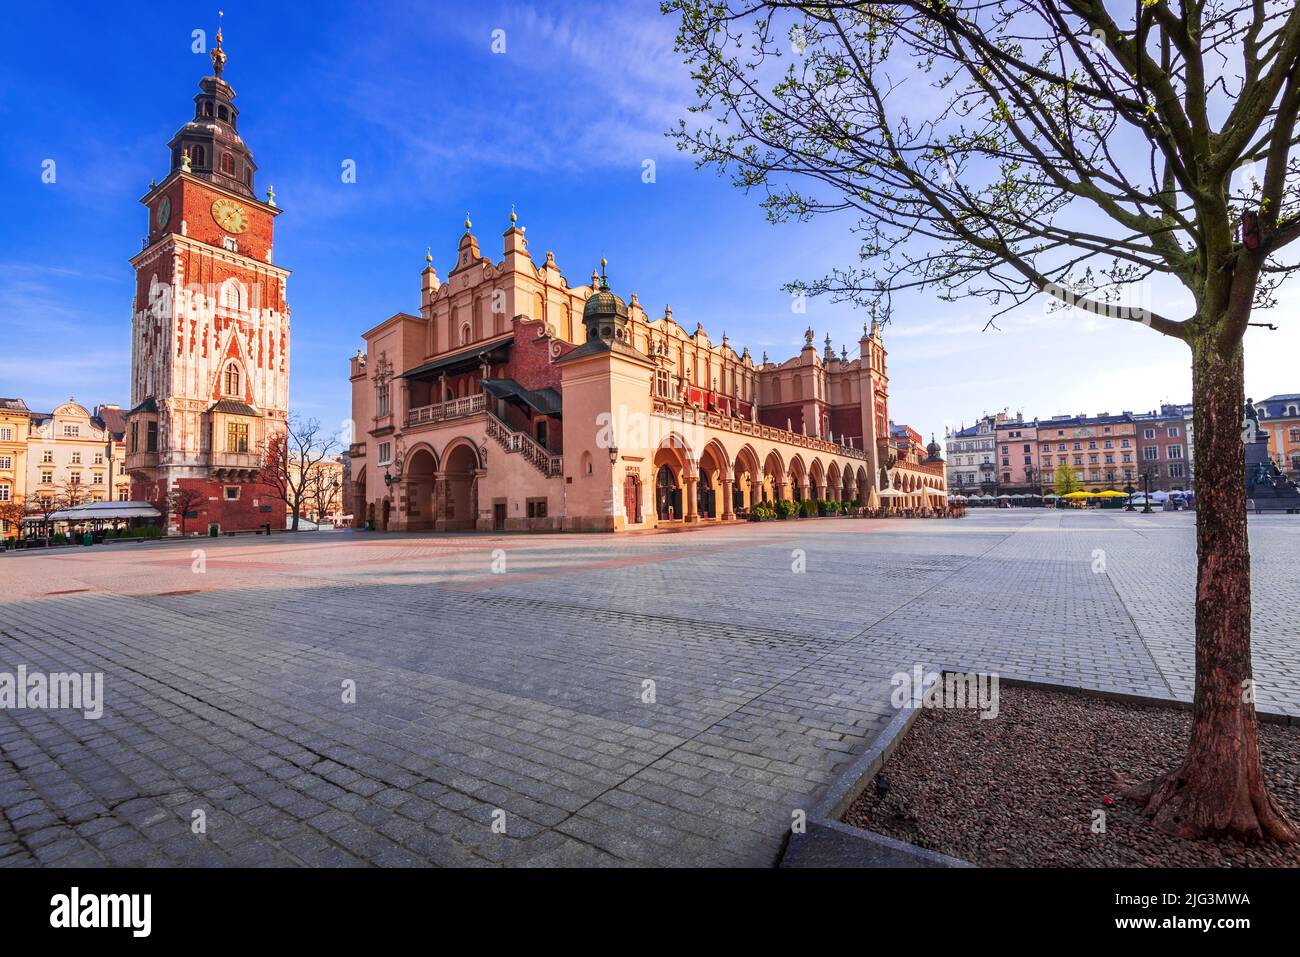 Krakau, Polen. Sonnenaufgangslicht mit dem Ryenek Square in der historischen Innenstadt von Cracovia. Rathausturm und Tuchhalle. Stockfoto